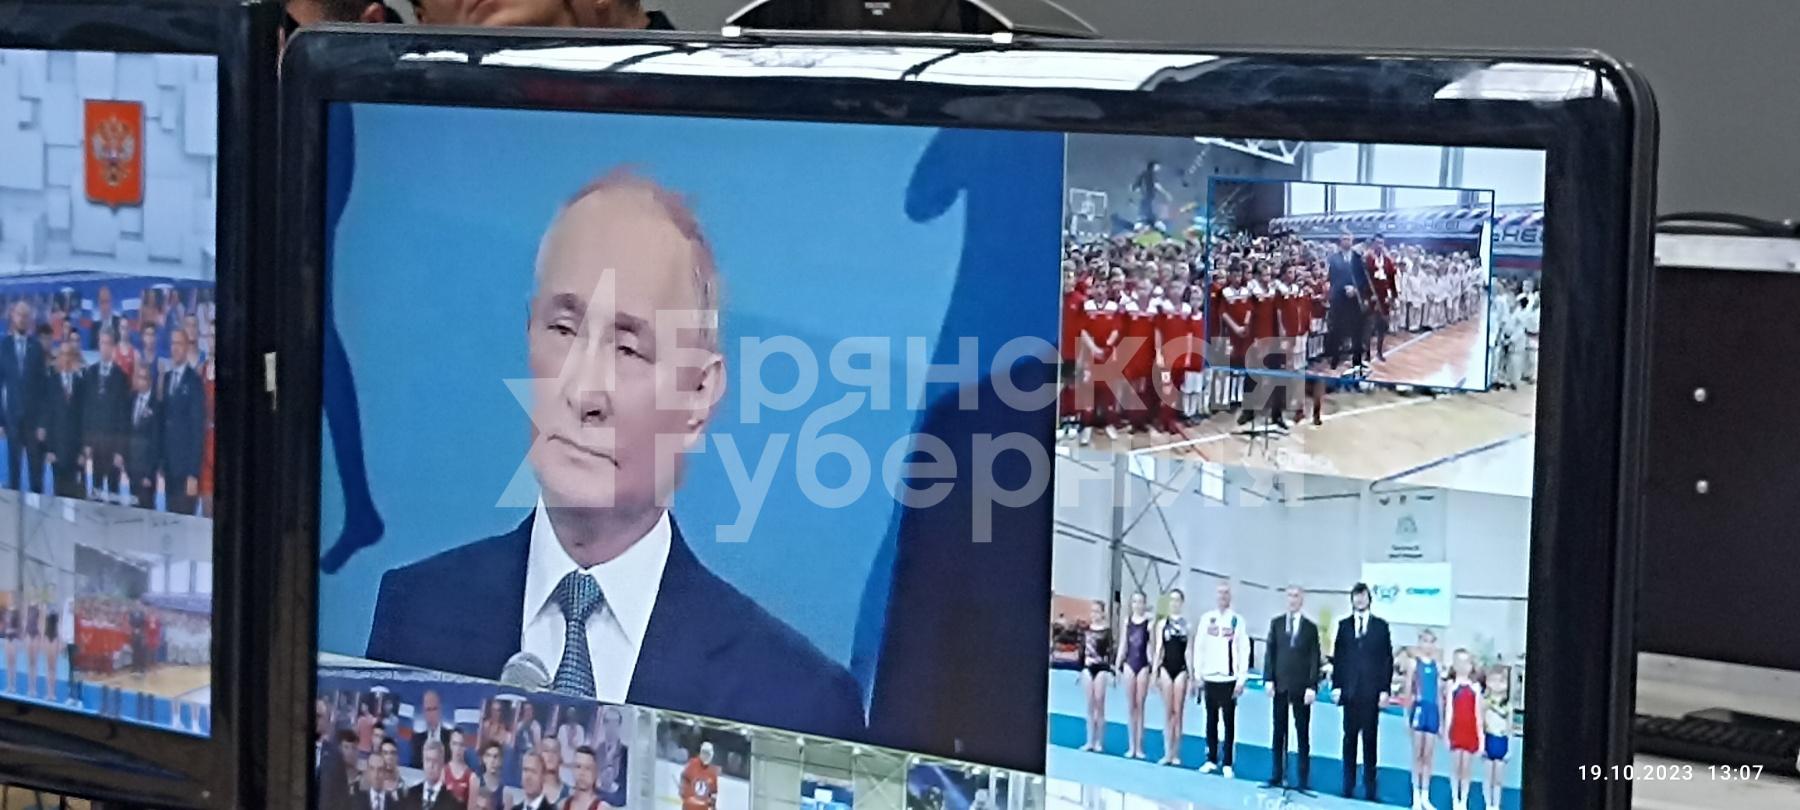 Президент Владимир Путин поучаствовал в открытии брянского ФОКа «Бежица»